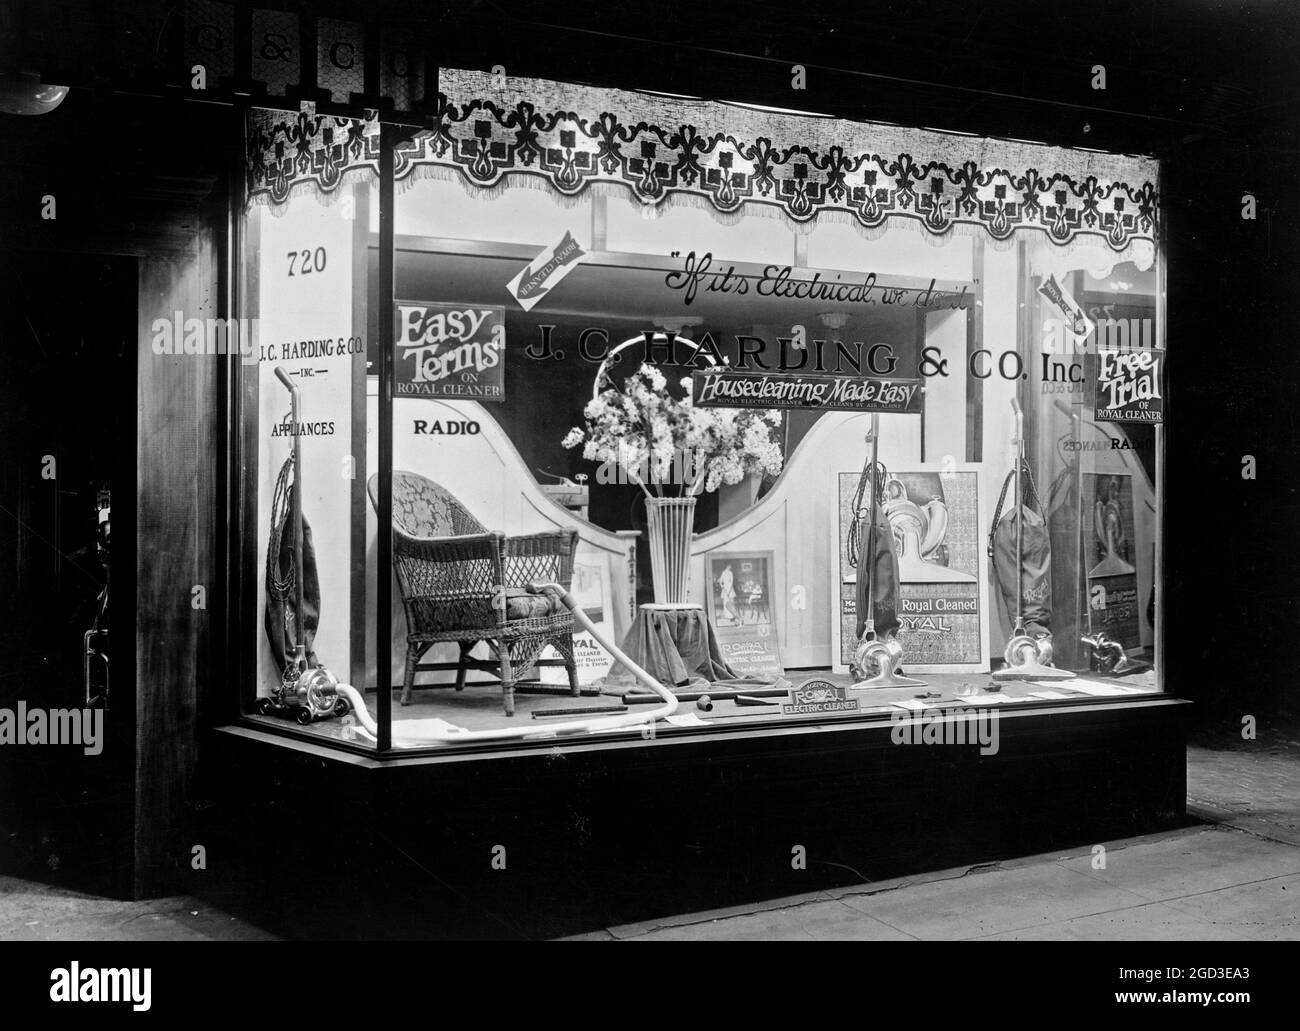 Staubsauger auf dem Display im J.C. Harding & Co., wahrscheinlich in Washington, D.C. Ca. 1909 Stockfoto